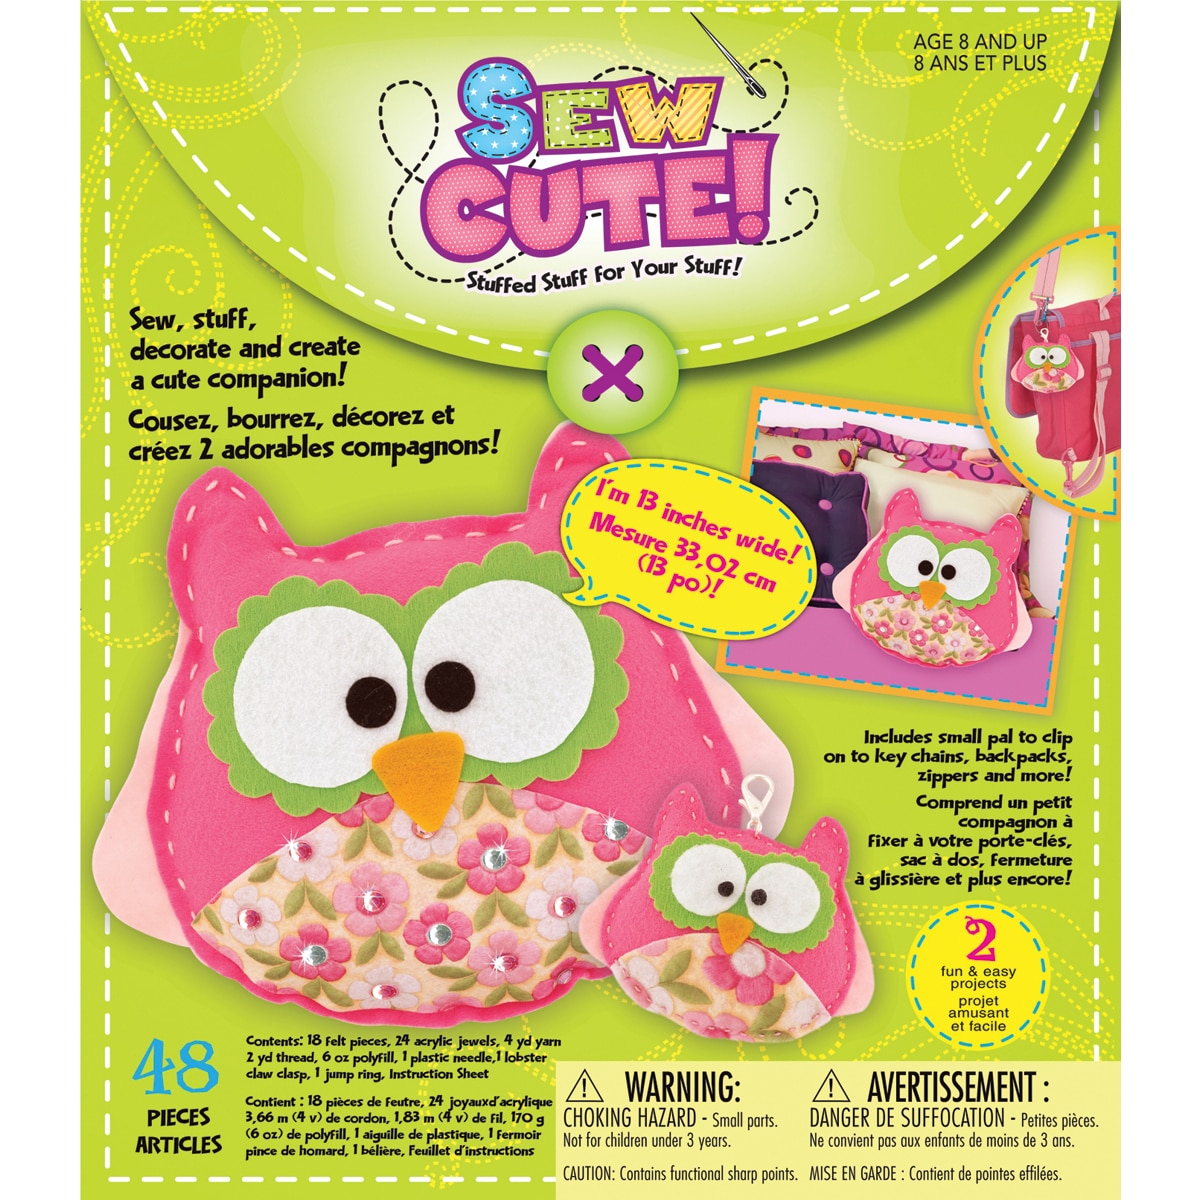 Sew Cute Owls Craft Box Kit